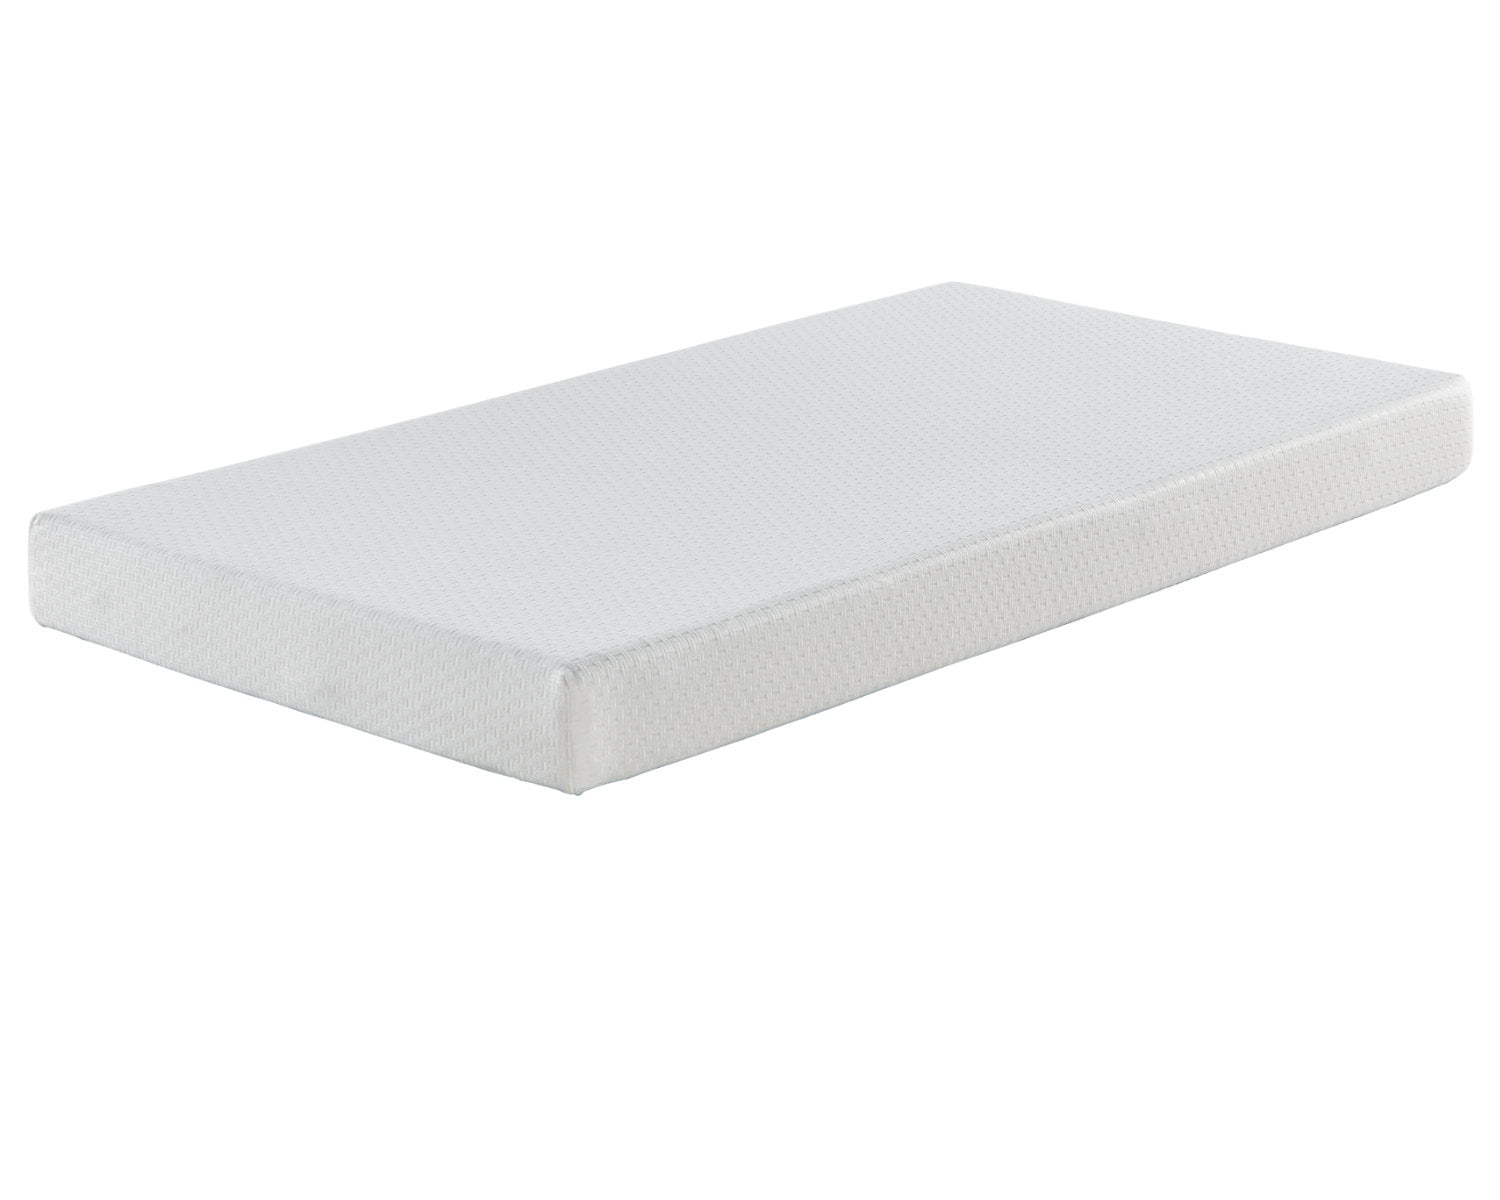 6 inch bonnell mattress